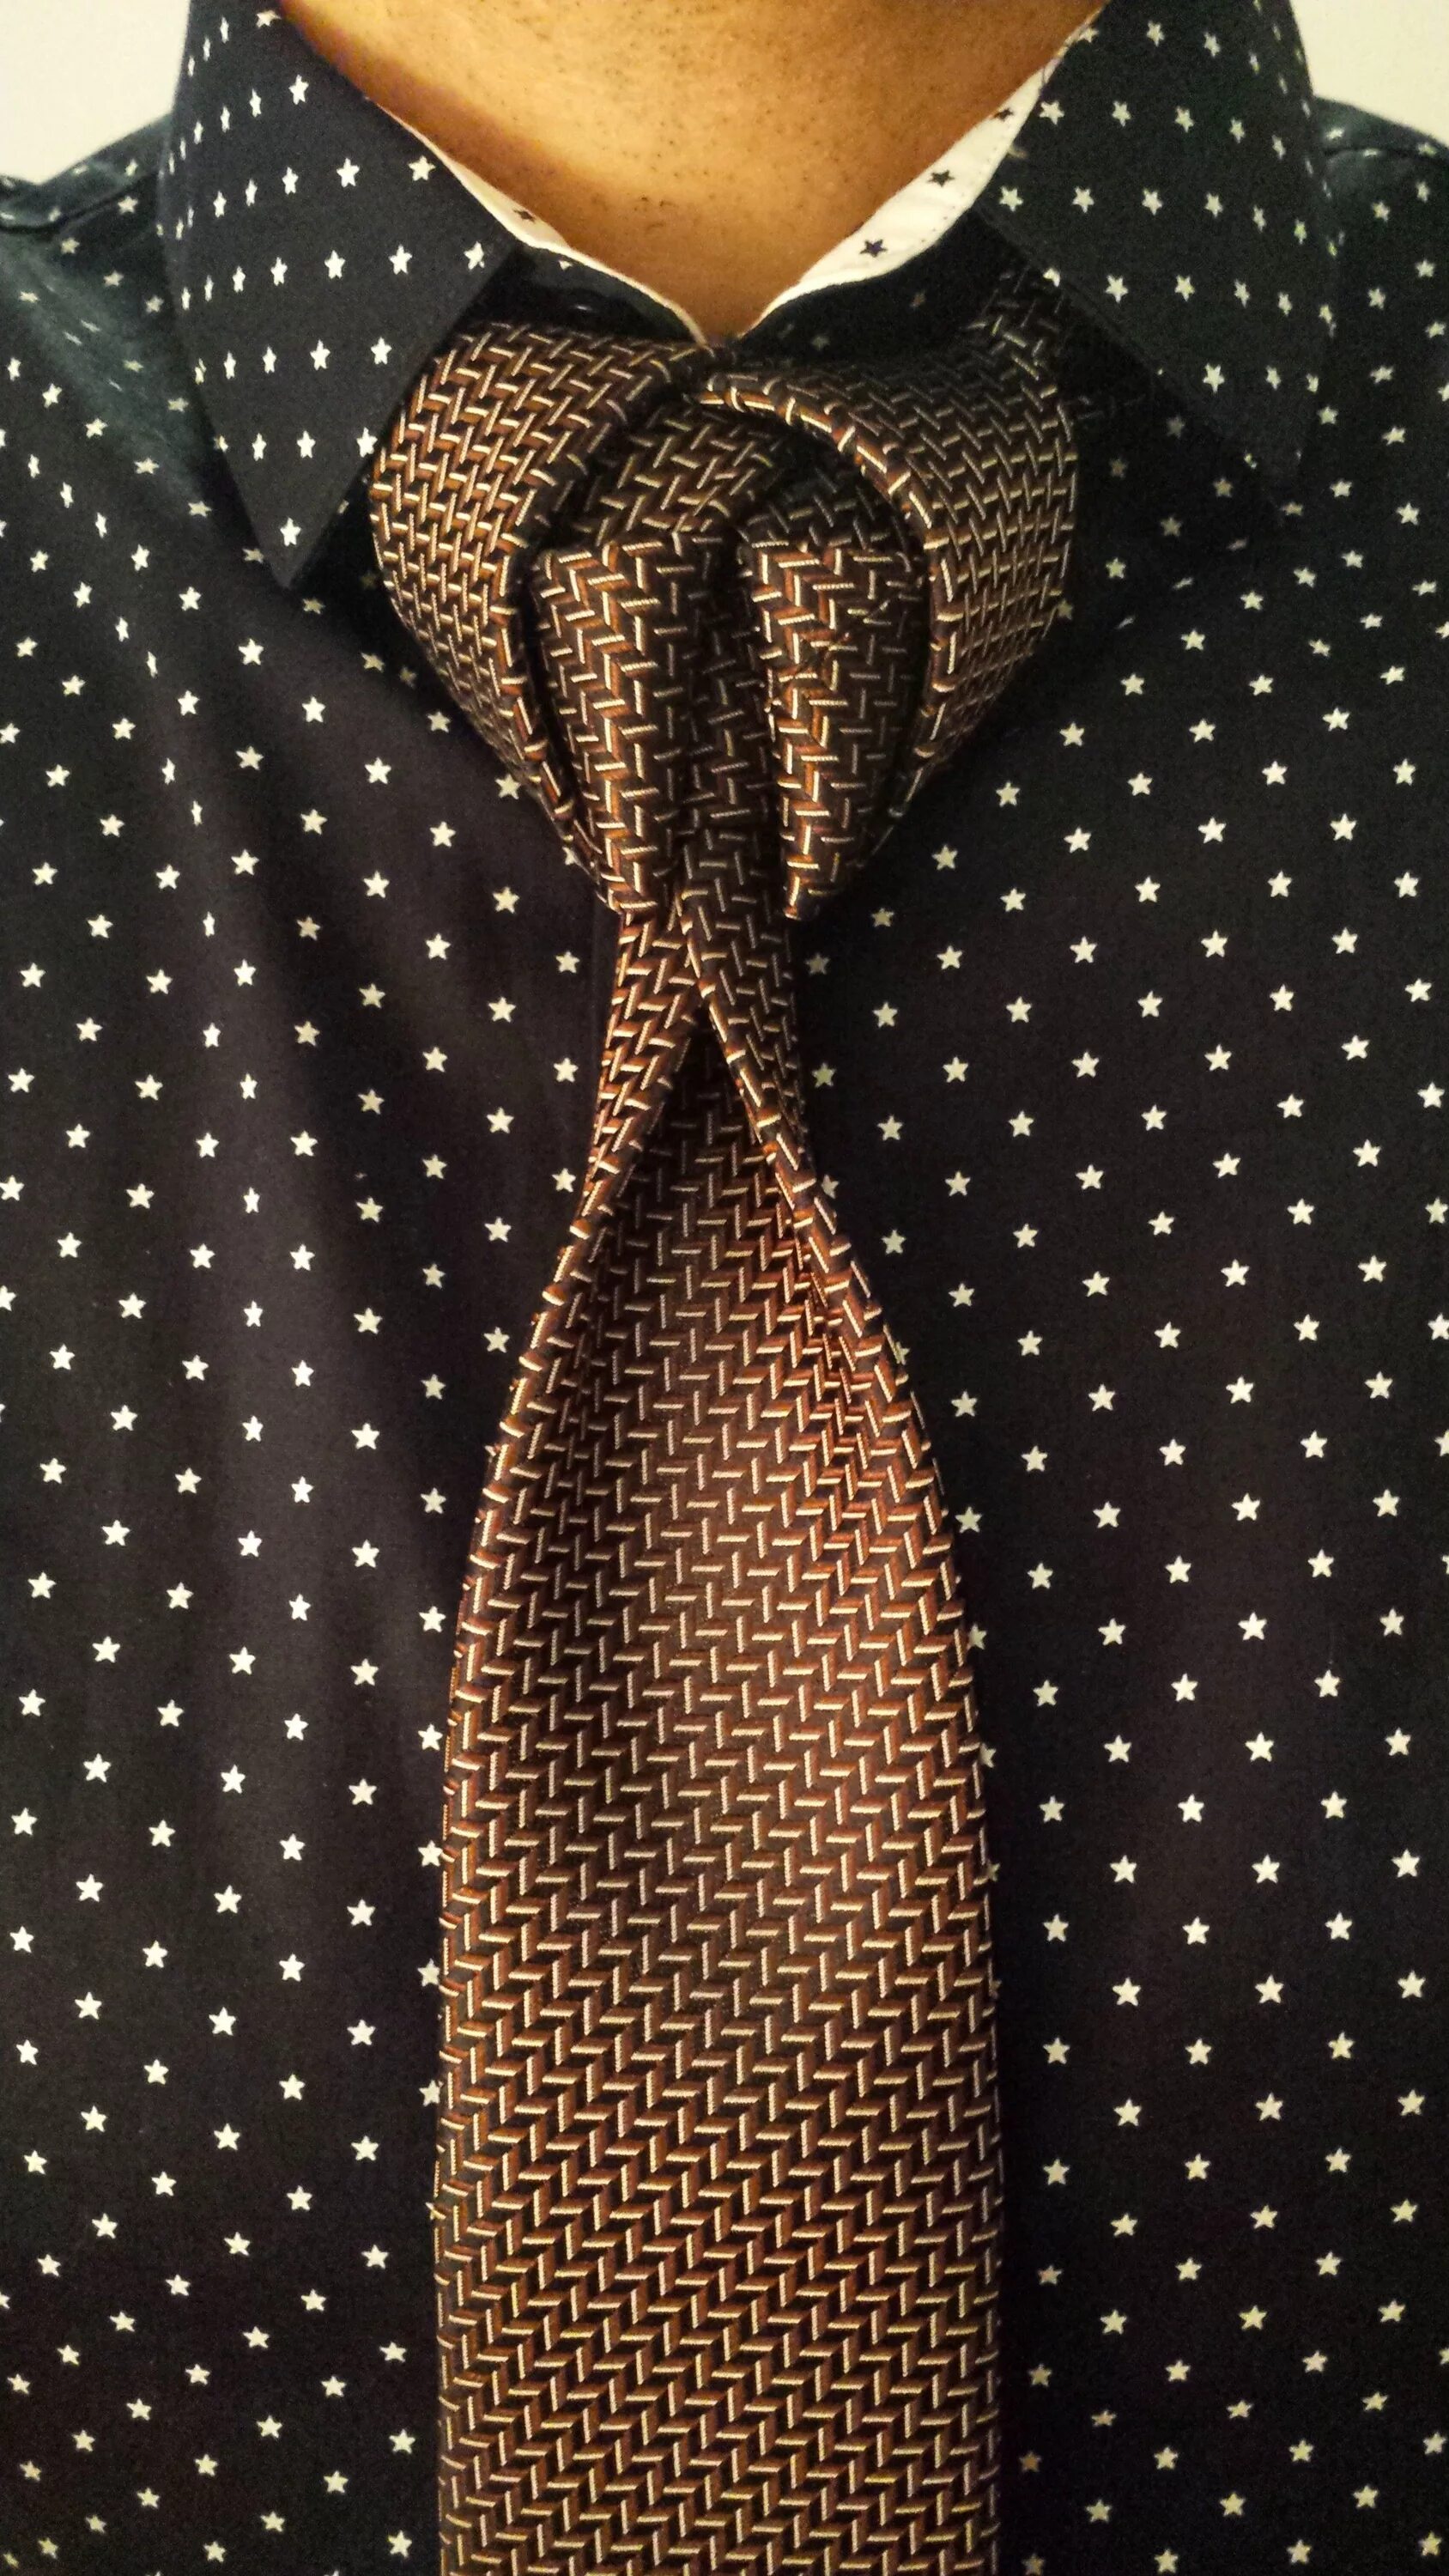 Завязываем мужской галстук видео. Необычные галстуки. Стильный галстук. Креативный галстук. Необычная завязка галстука.